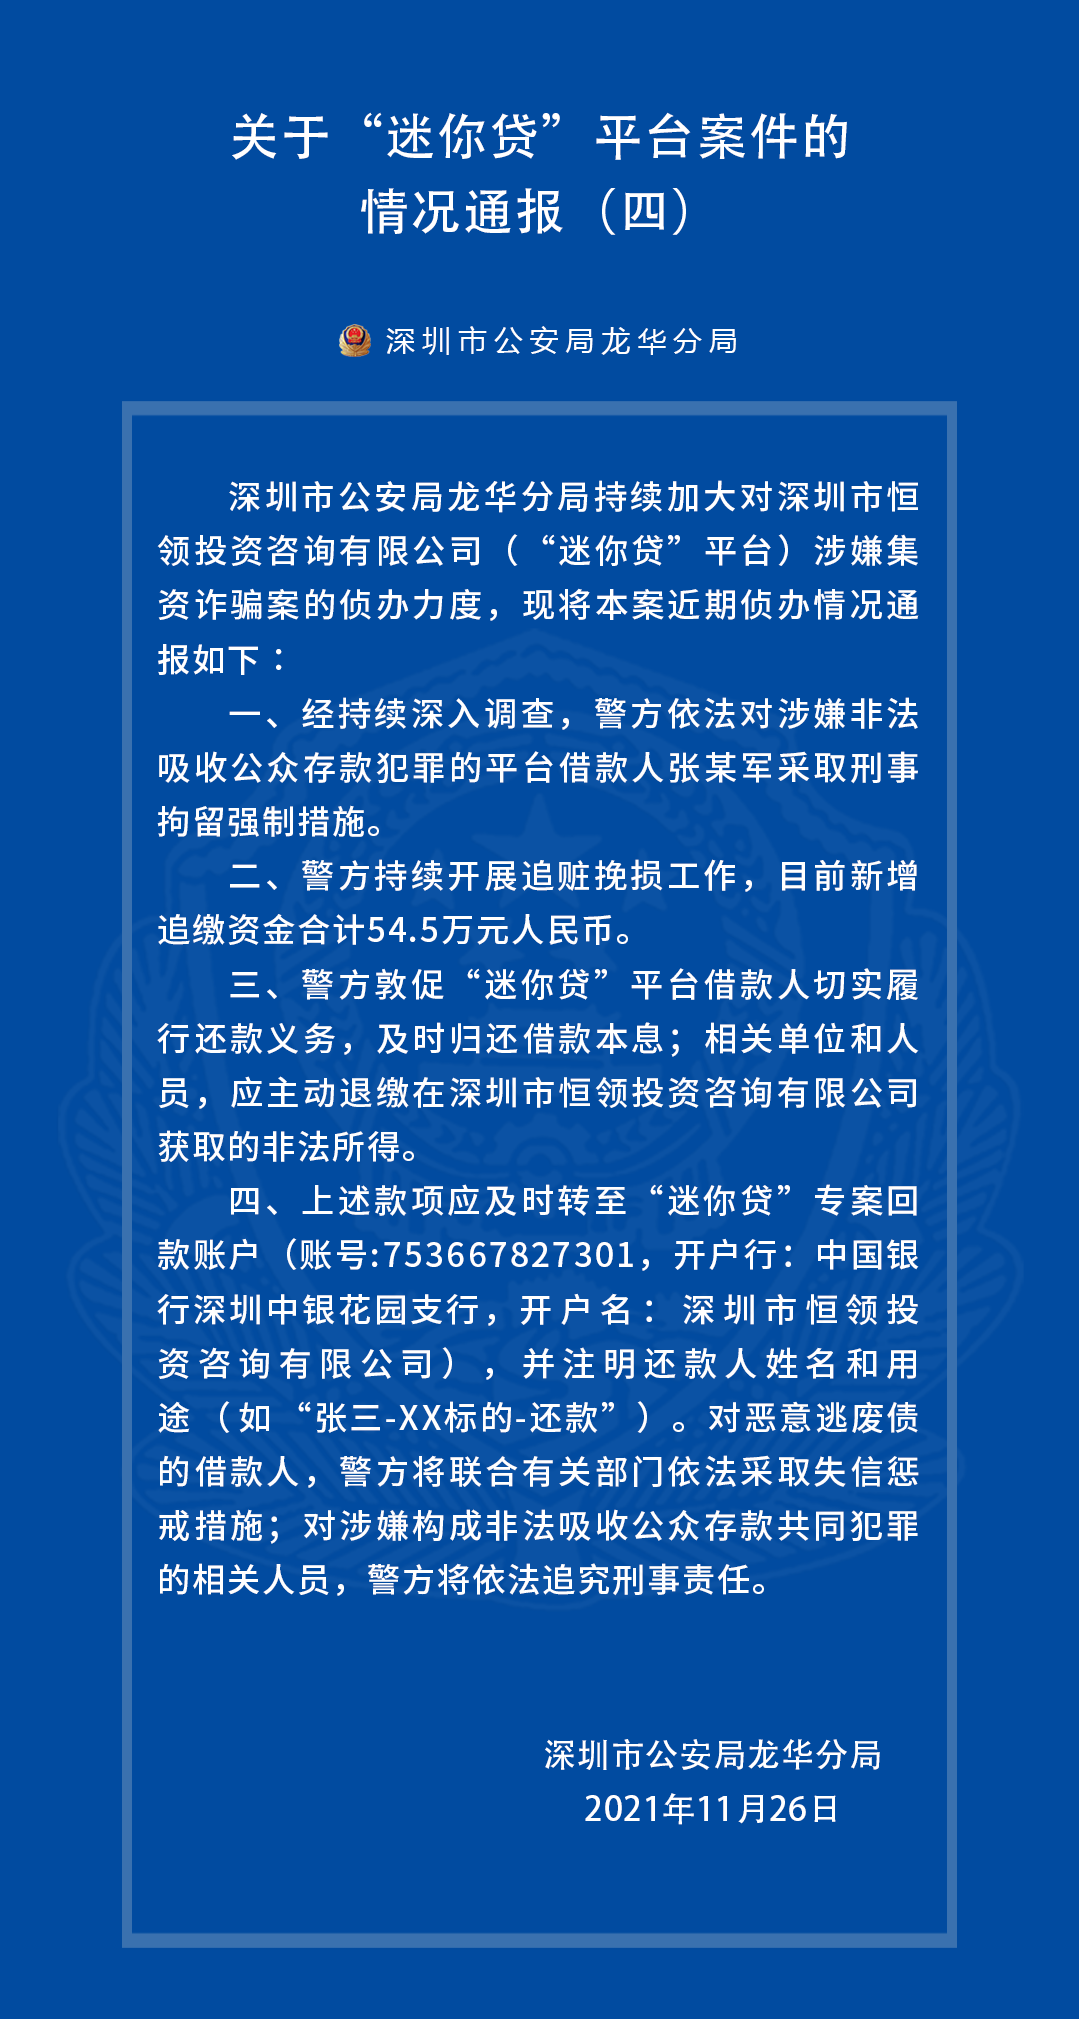 深圳非吸平台“迷你贷”最新案件进展：1名借款人已被抓 警方敦促相关人员退赃